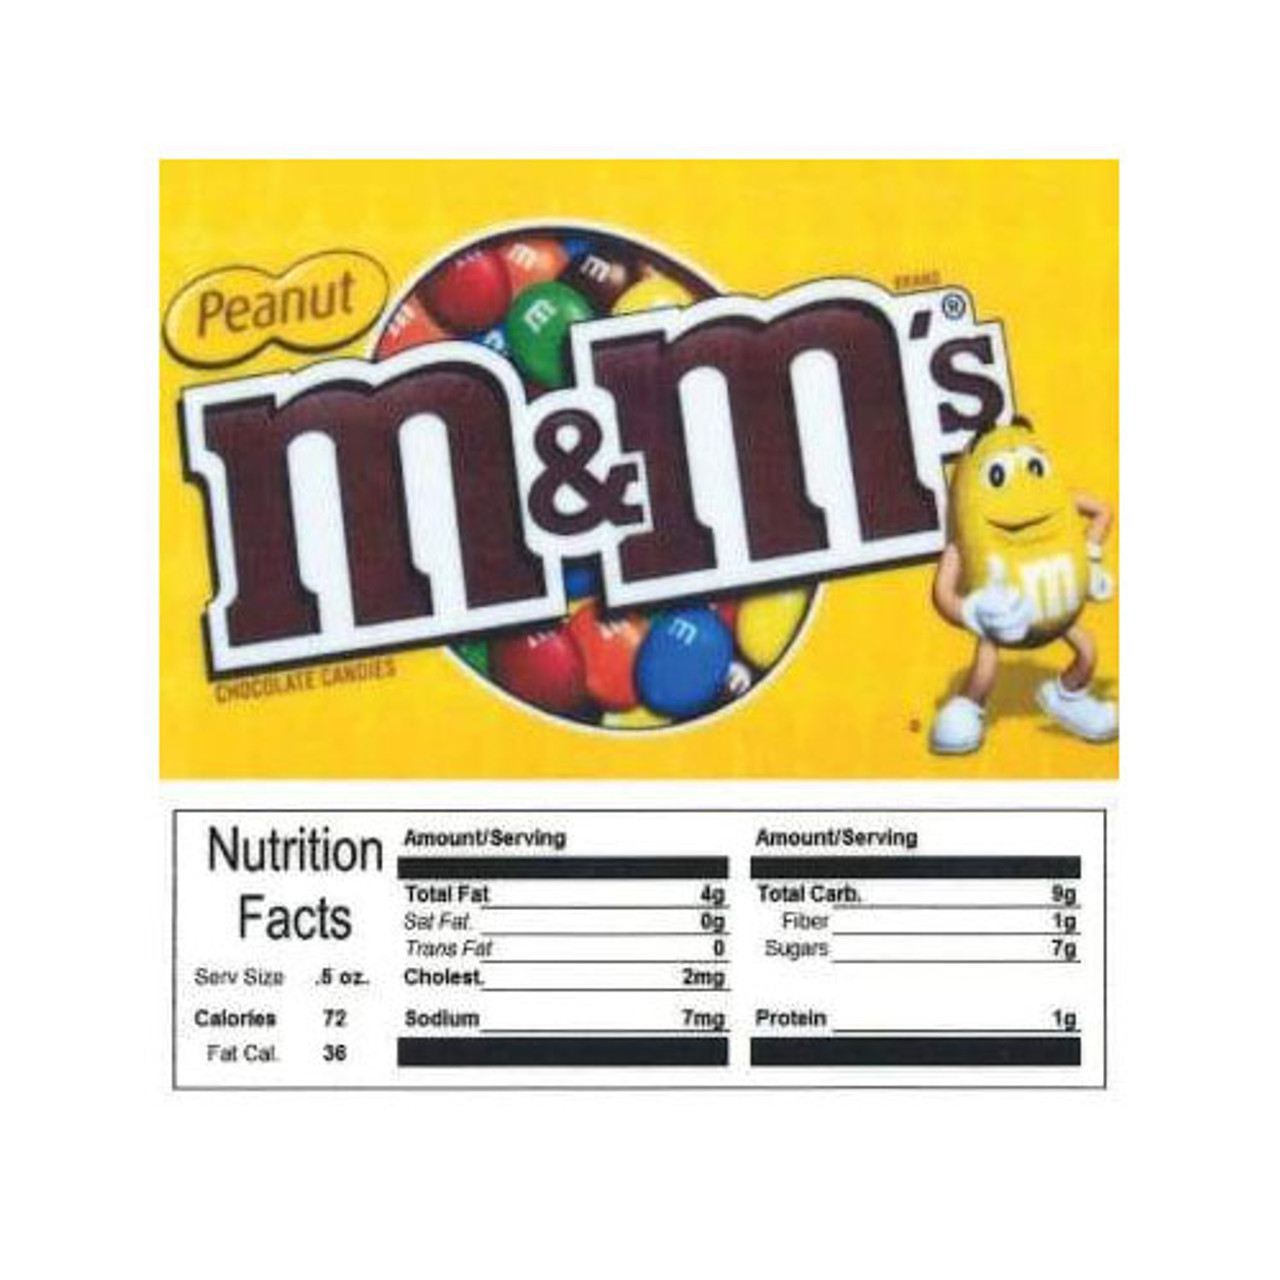 Peanut M&M's Vending Machine Label 